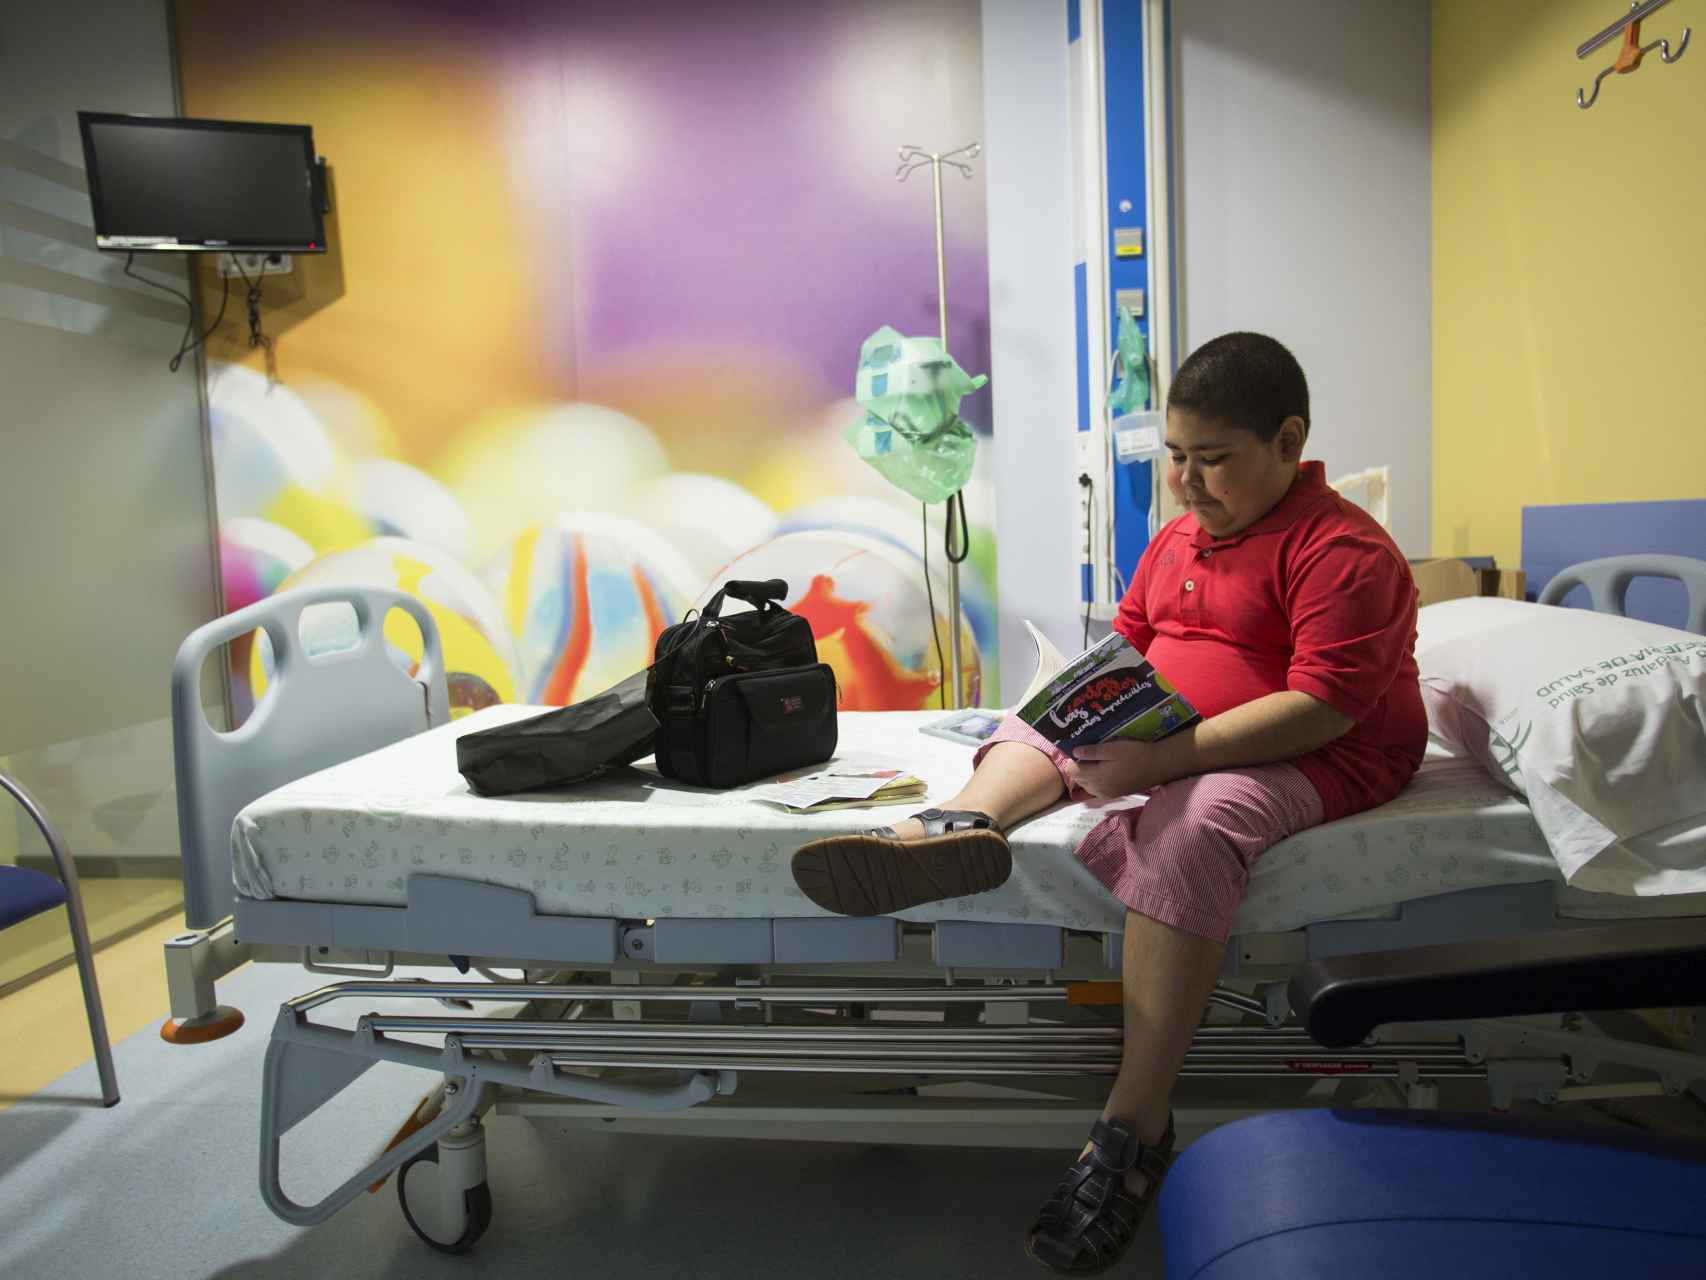 Rubén sufre histiocitosis, una enfermedad que afecta a uno de cada 200.000 niños.